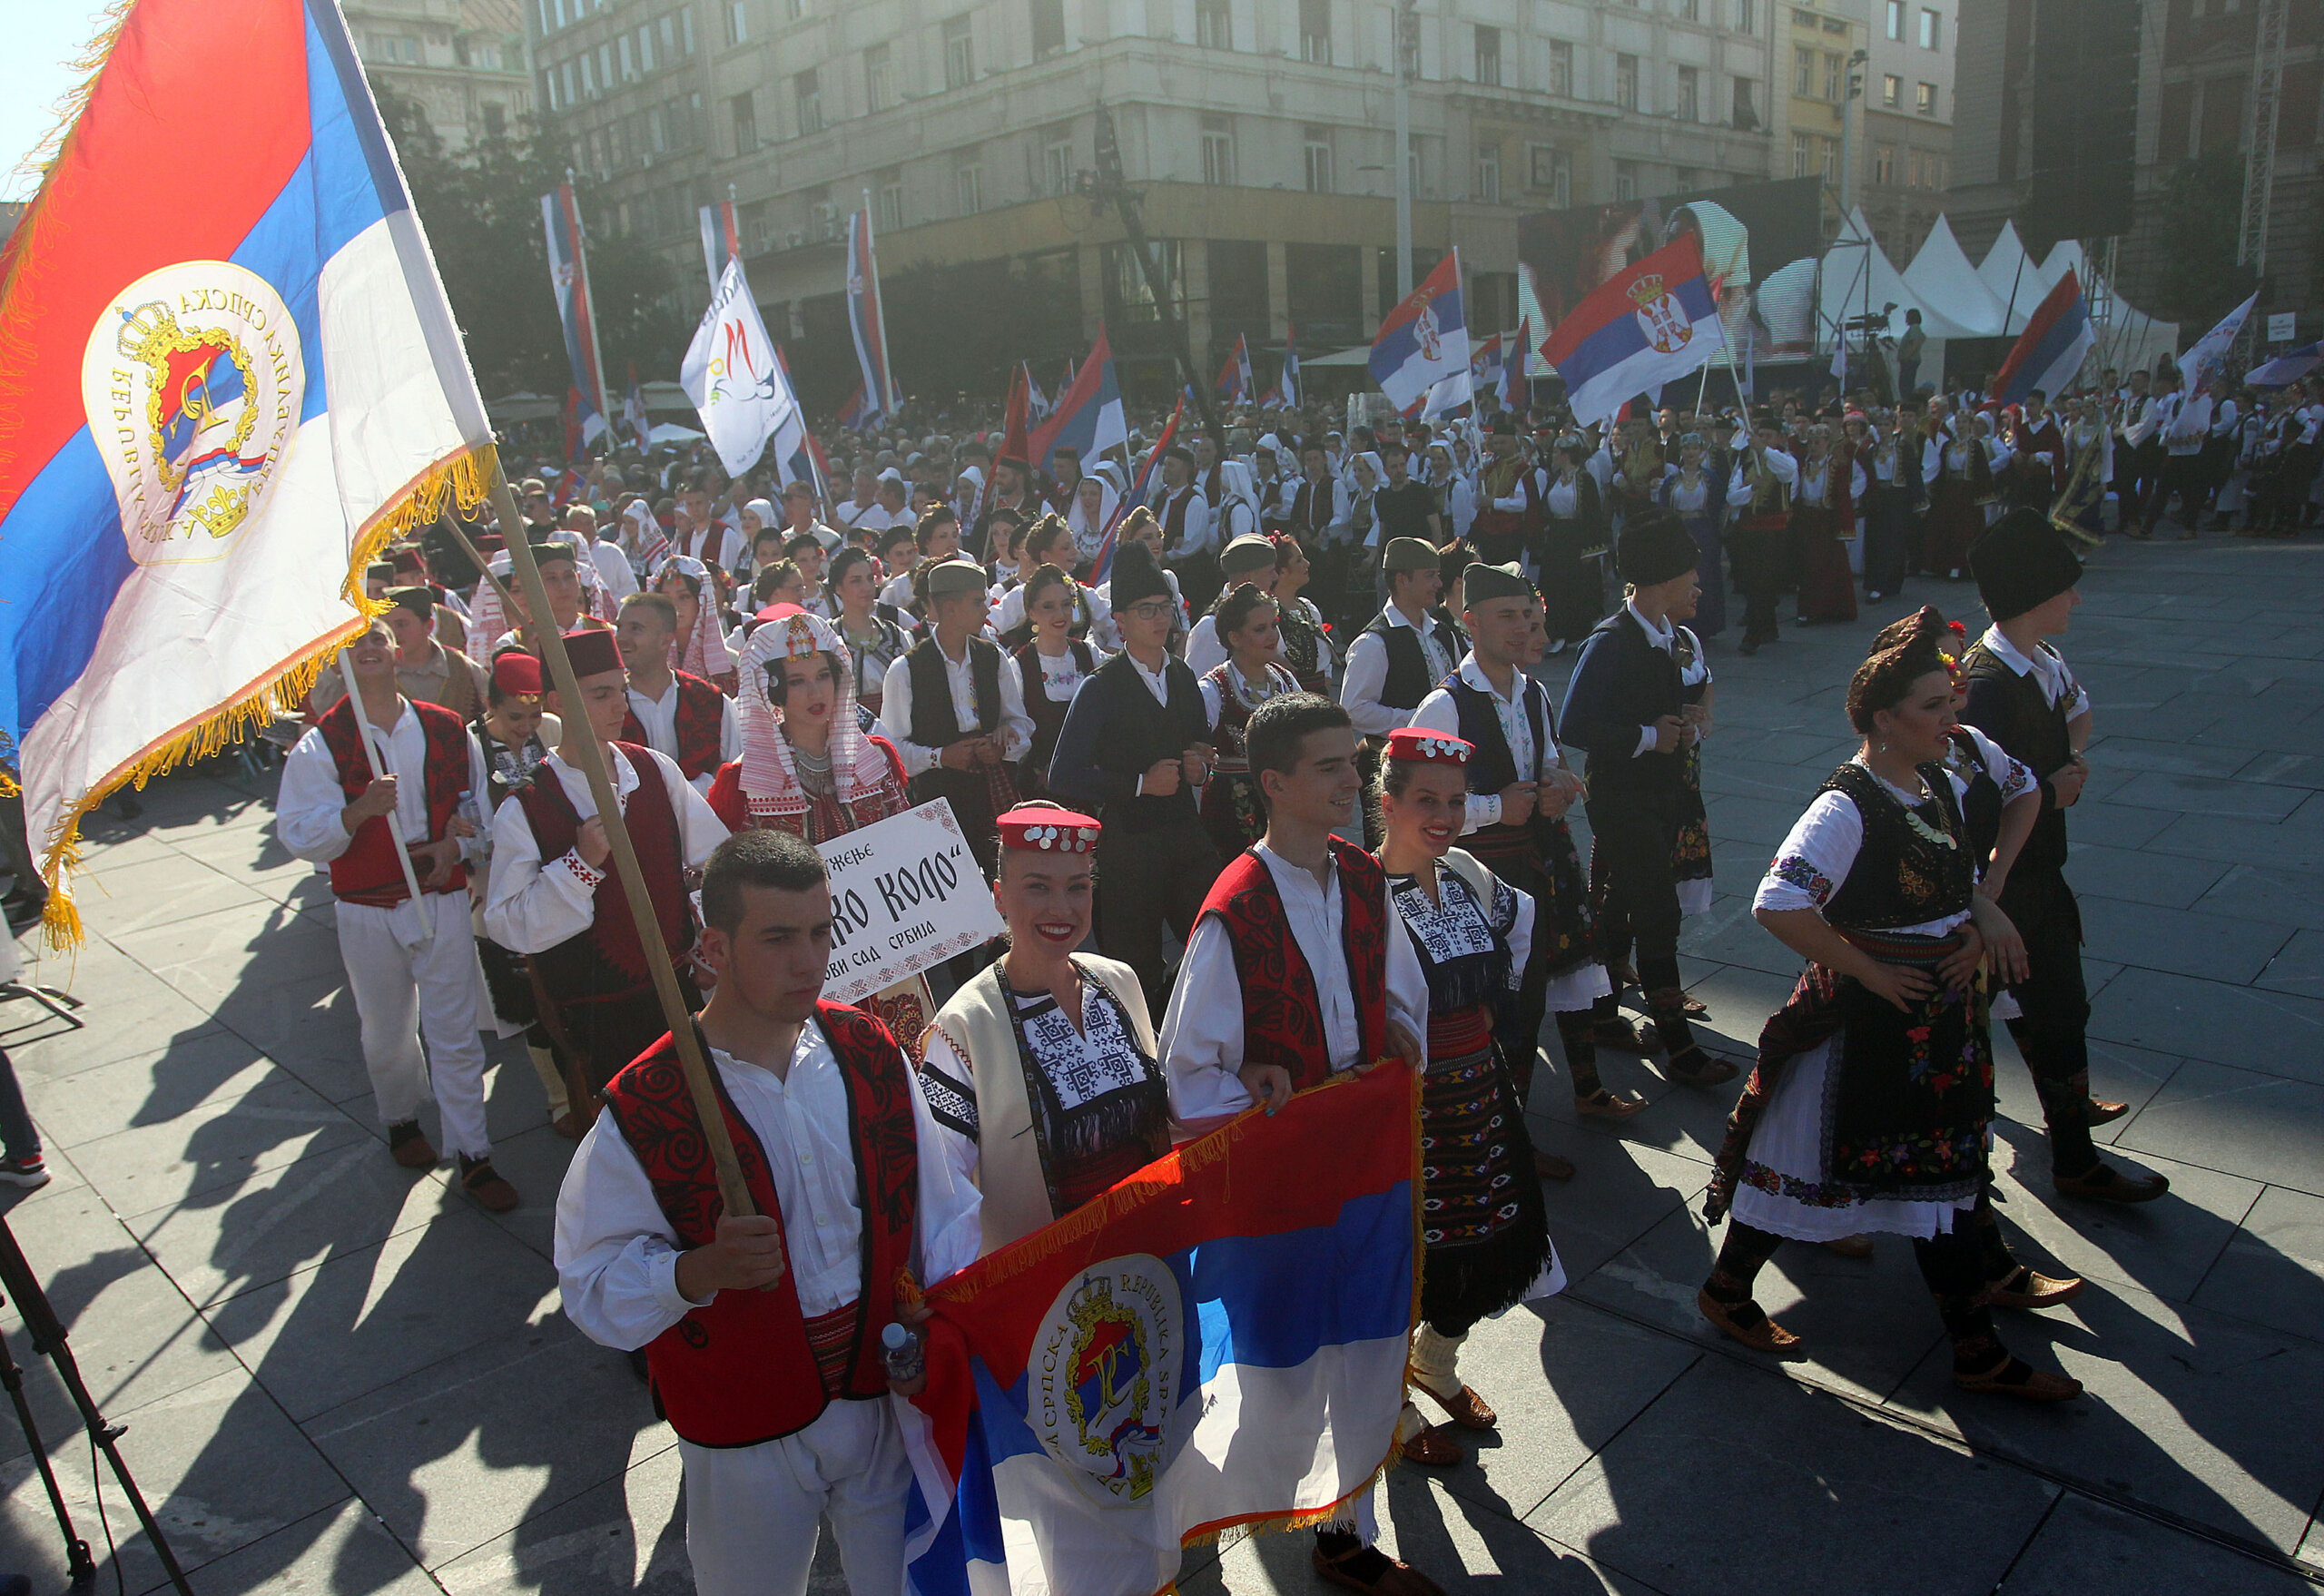 (FOTO) Kako je izgledala manifestacija "Jedan narod, jedan sabor - Srbija i Srpska" na Trgu republike u fotografijama? 21